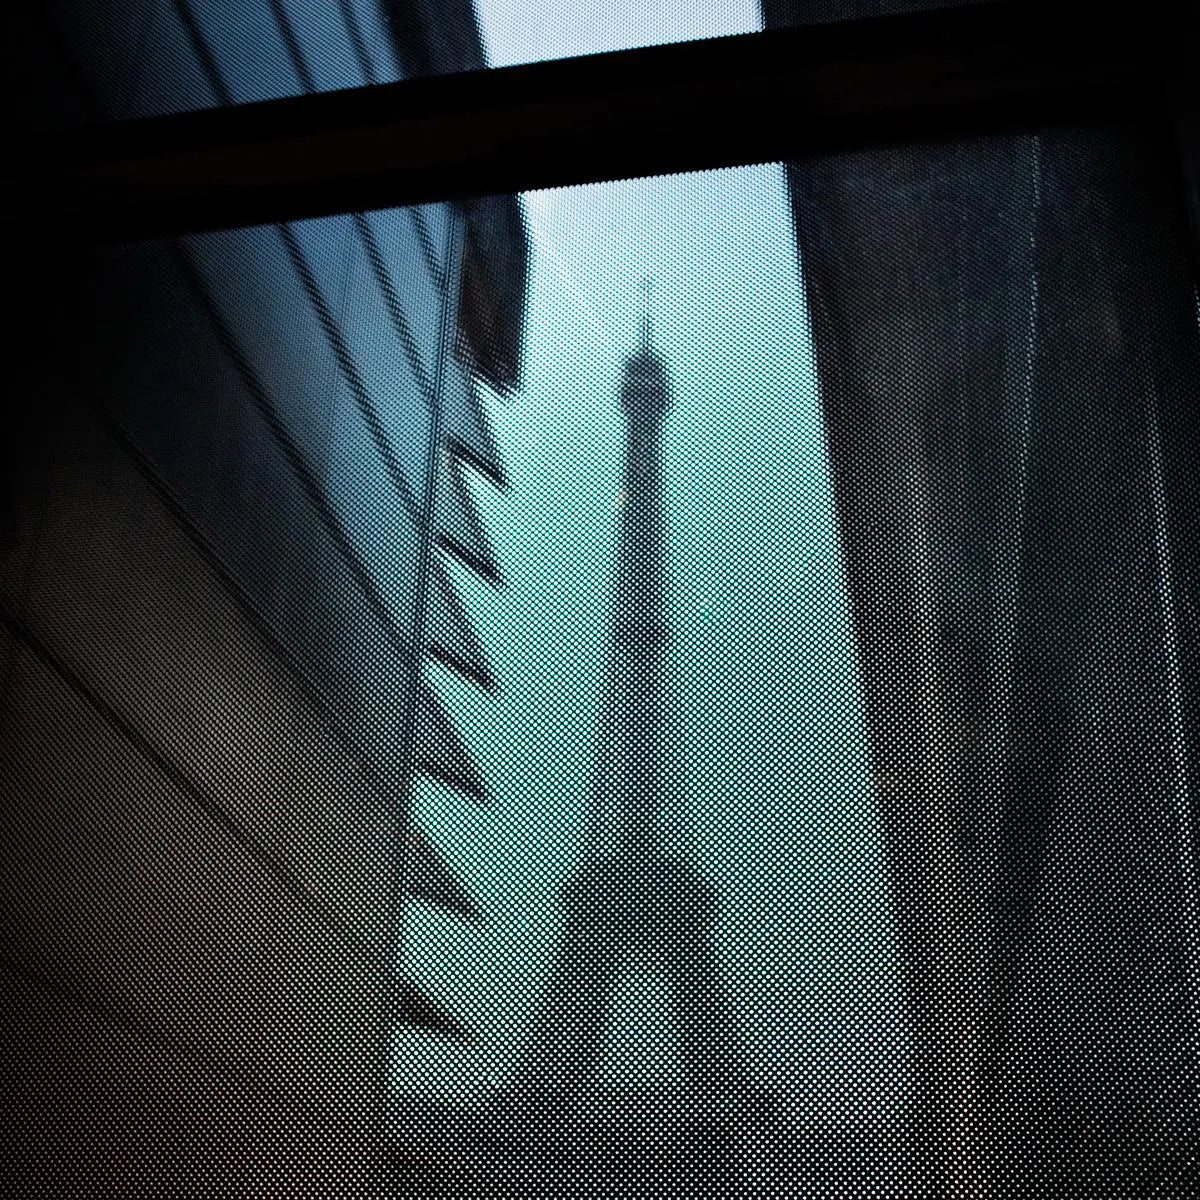 Musee du quai branly in Paris 02, by Giovanni Presutti-PurePhoto